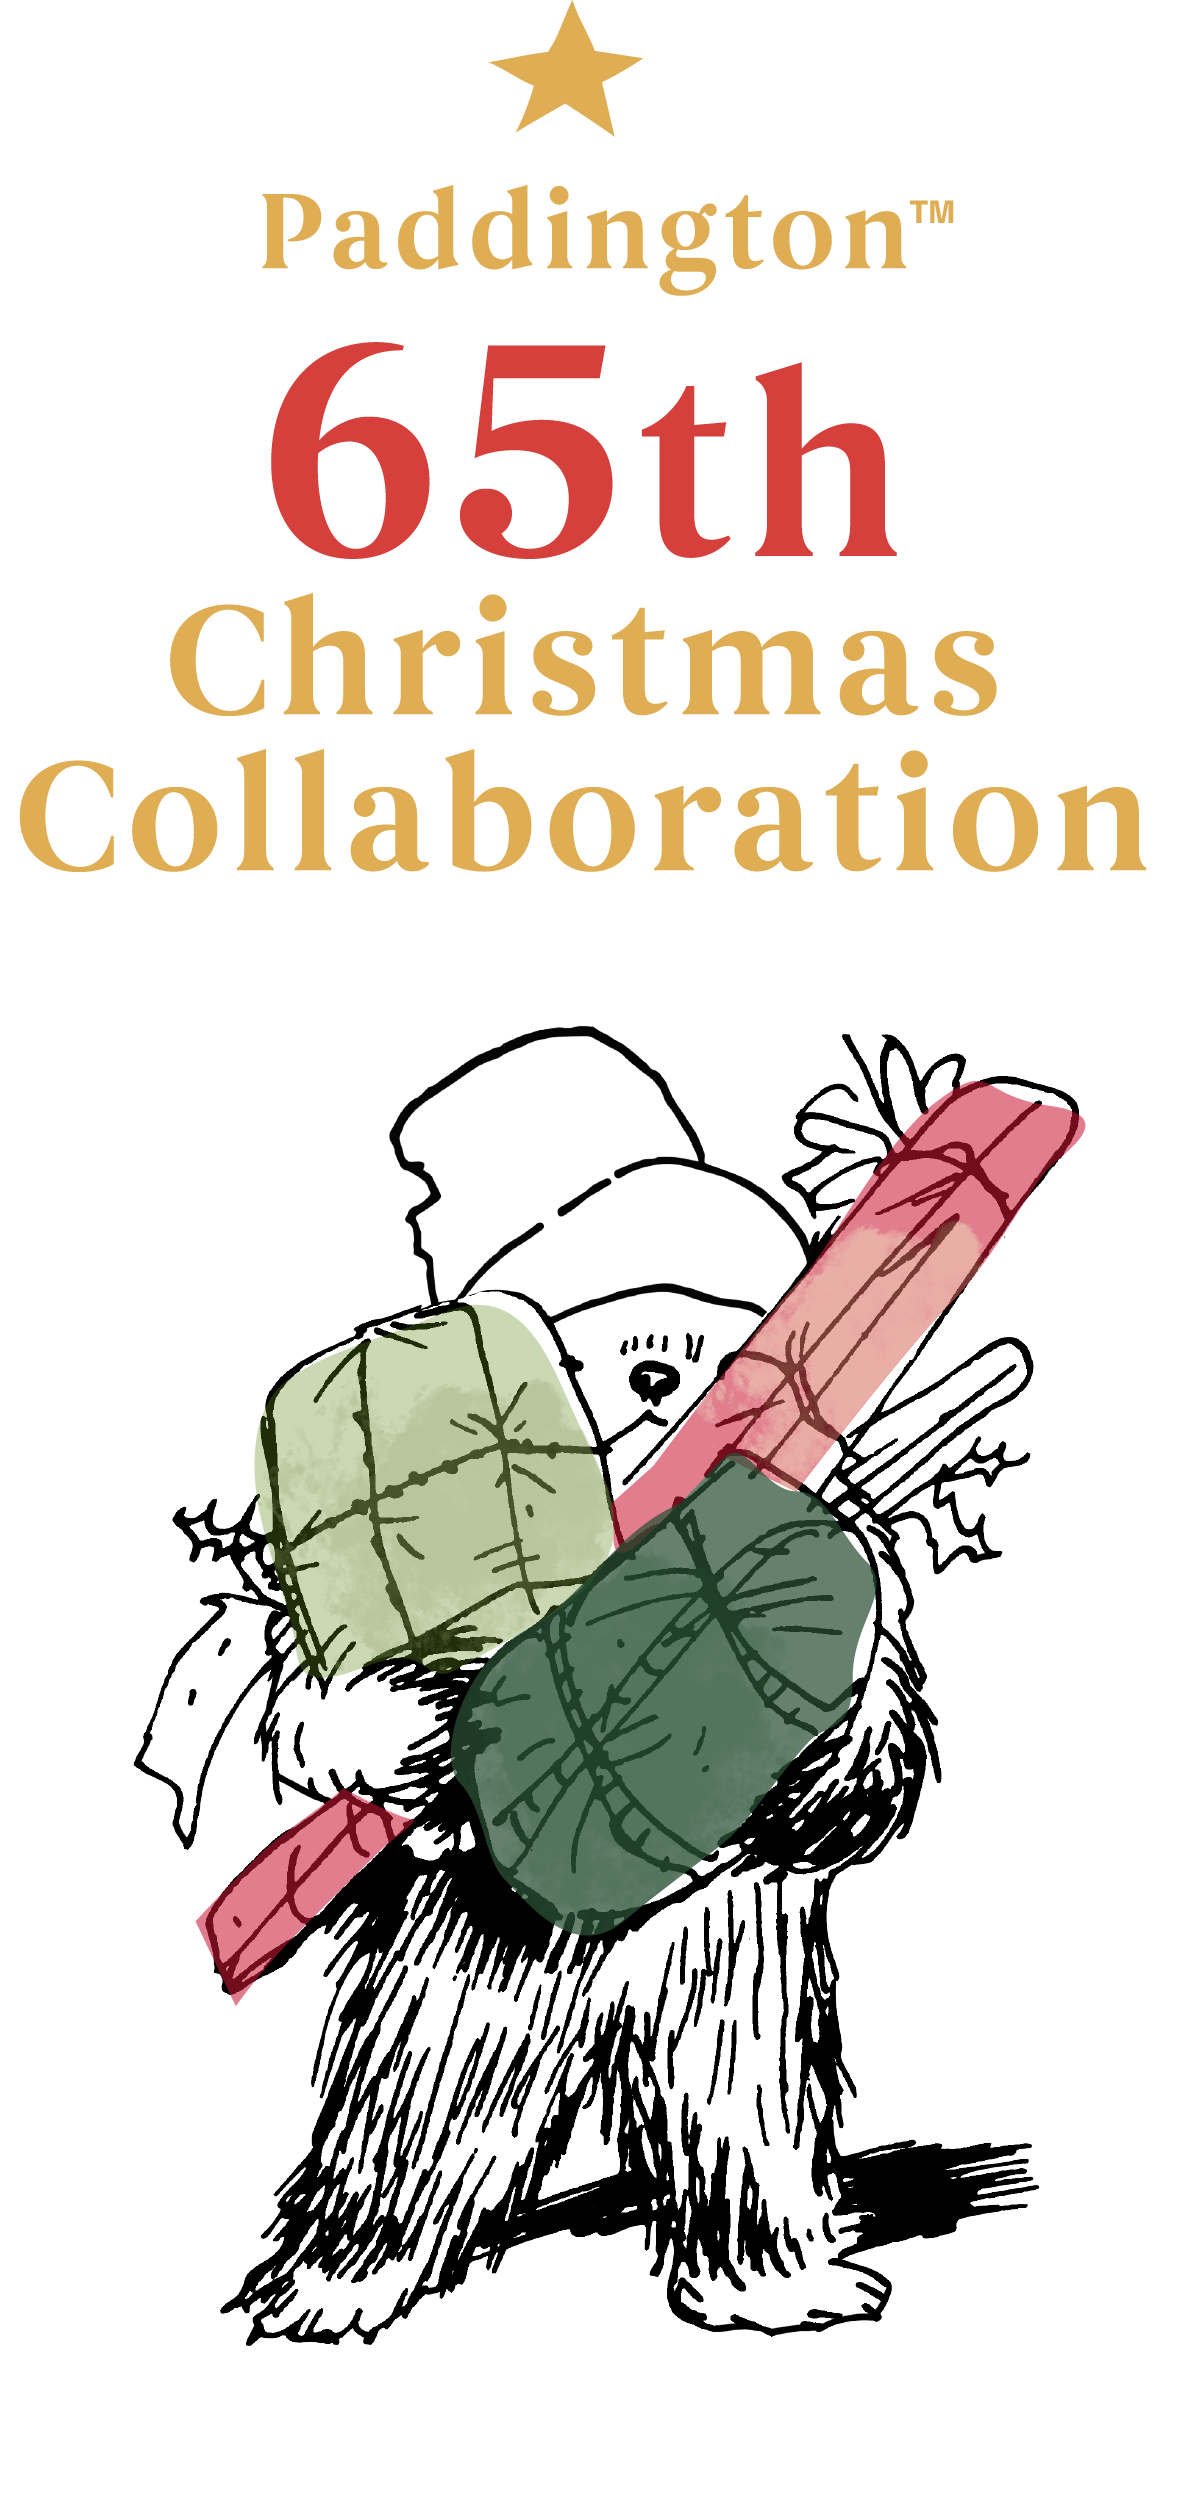 Paddington 65th Christmas Collaboration